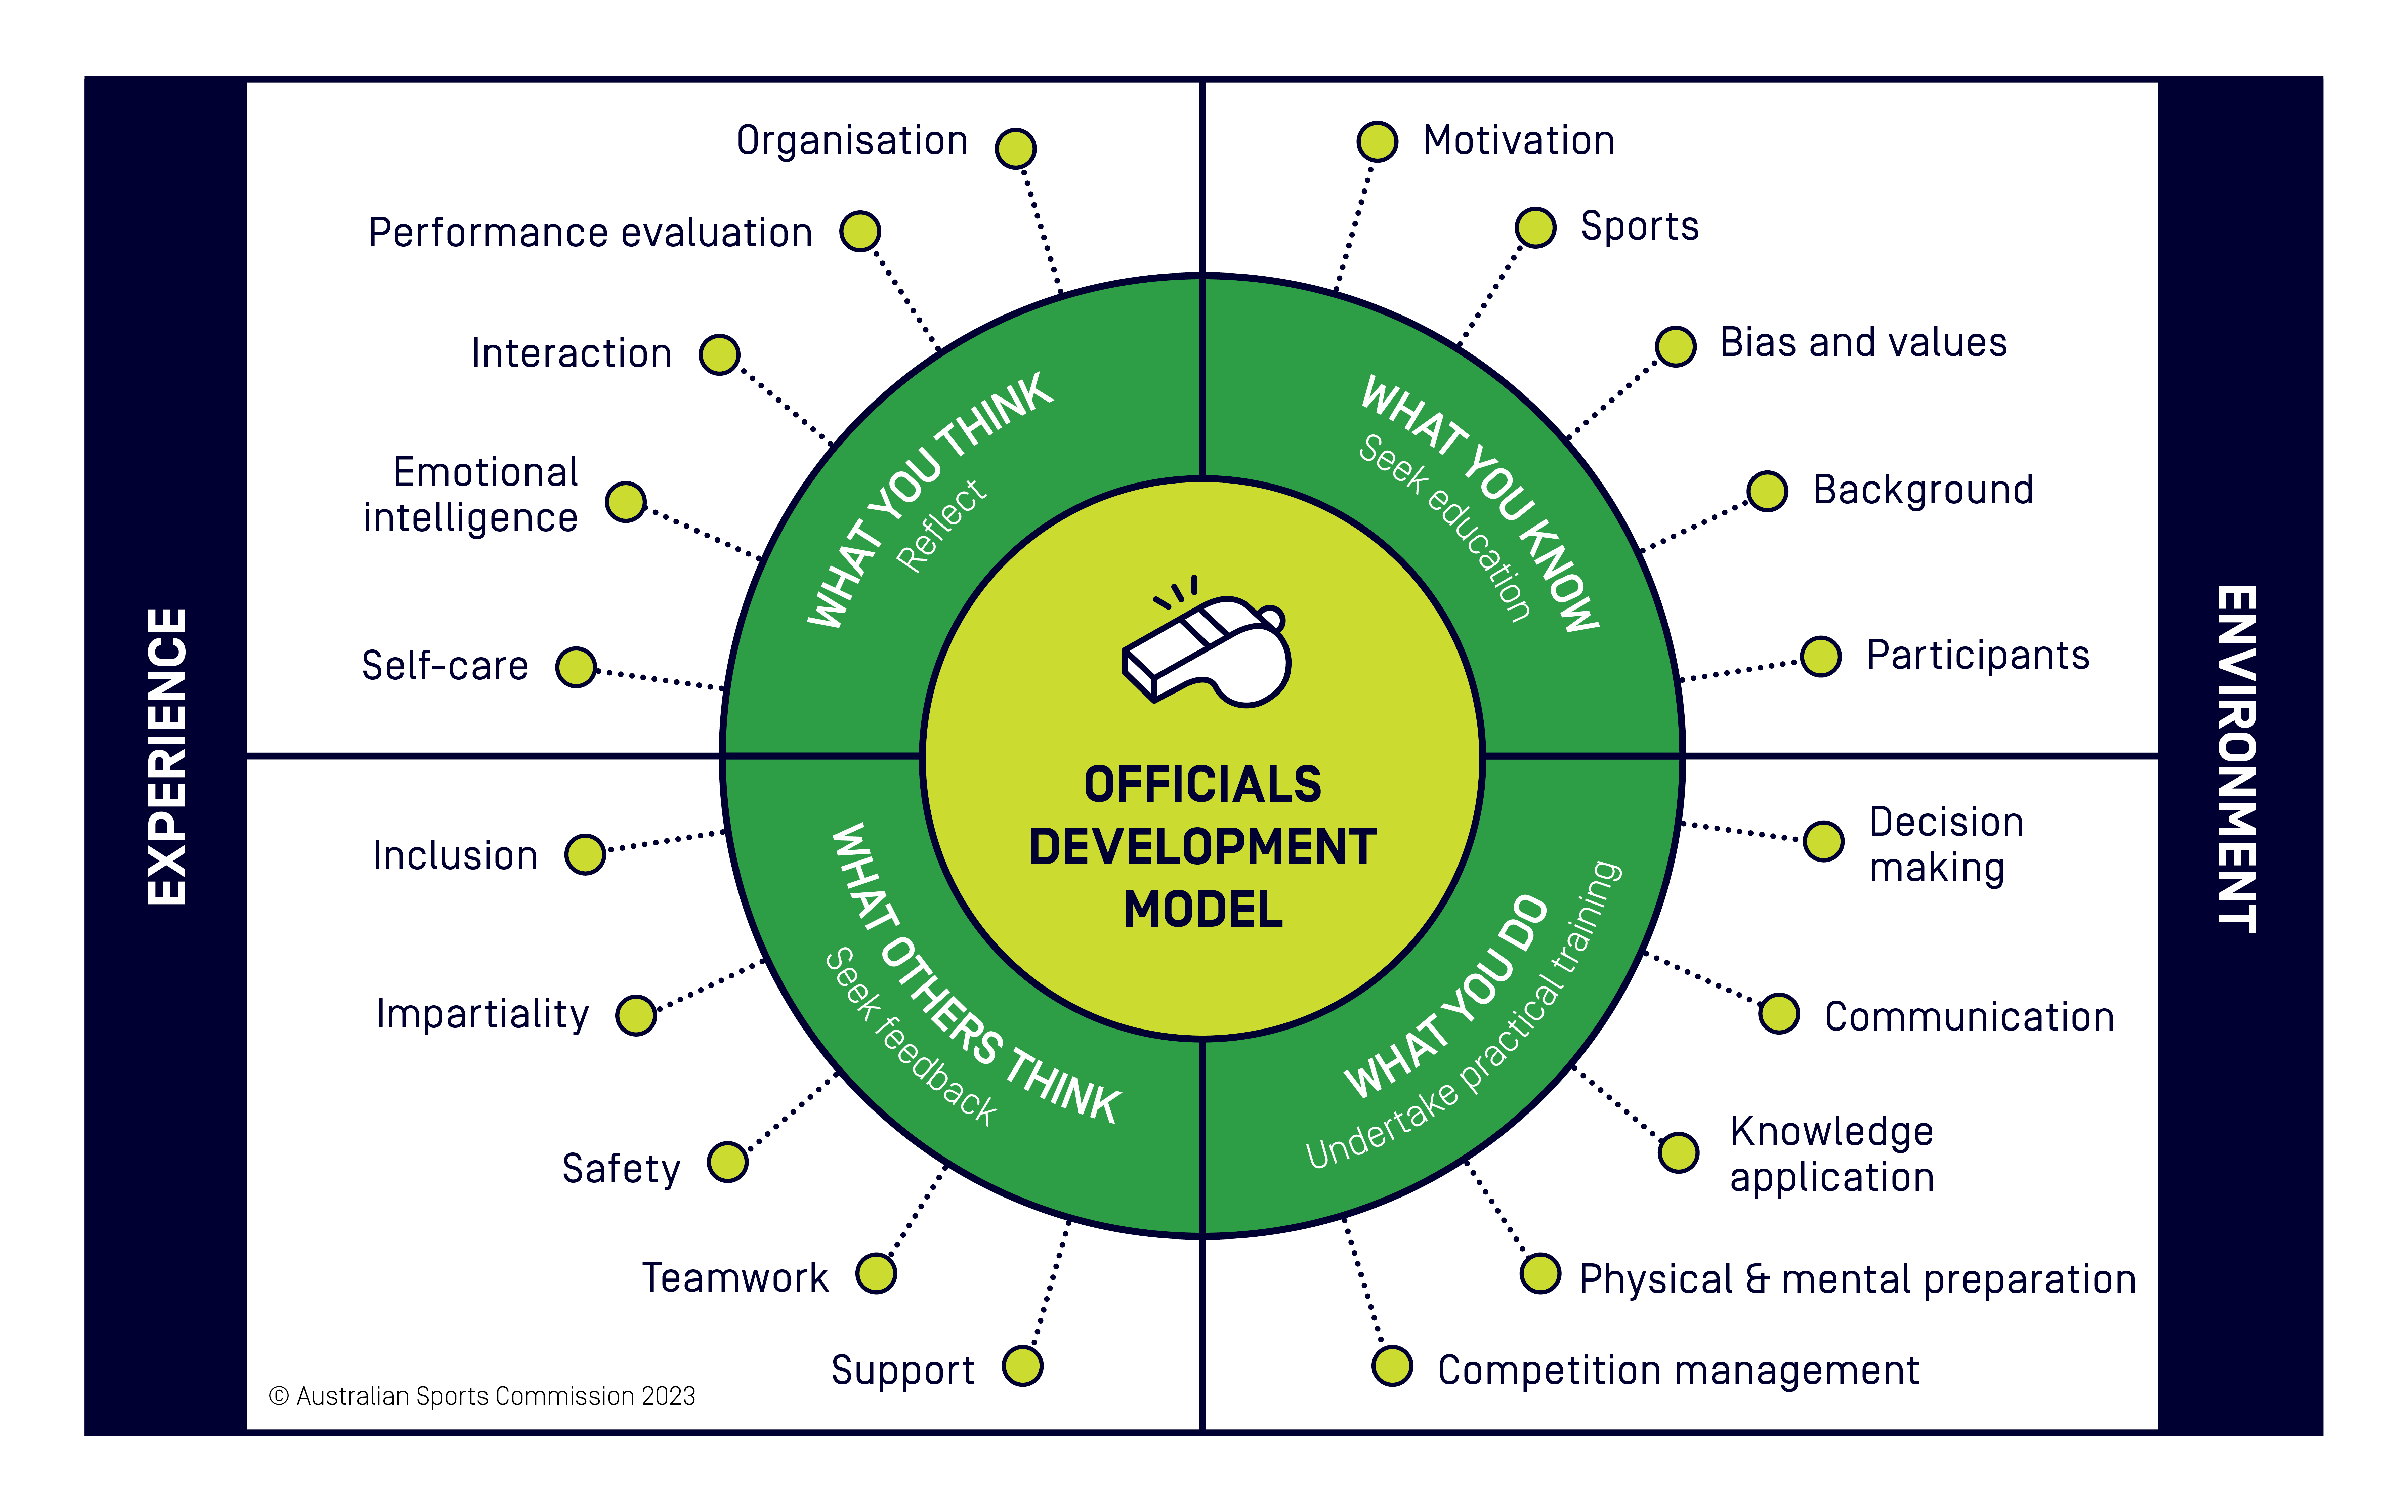 Officials Development Model